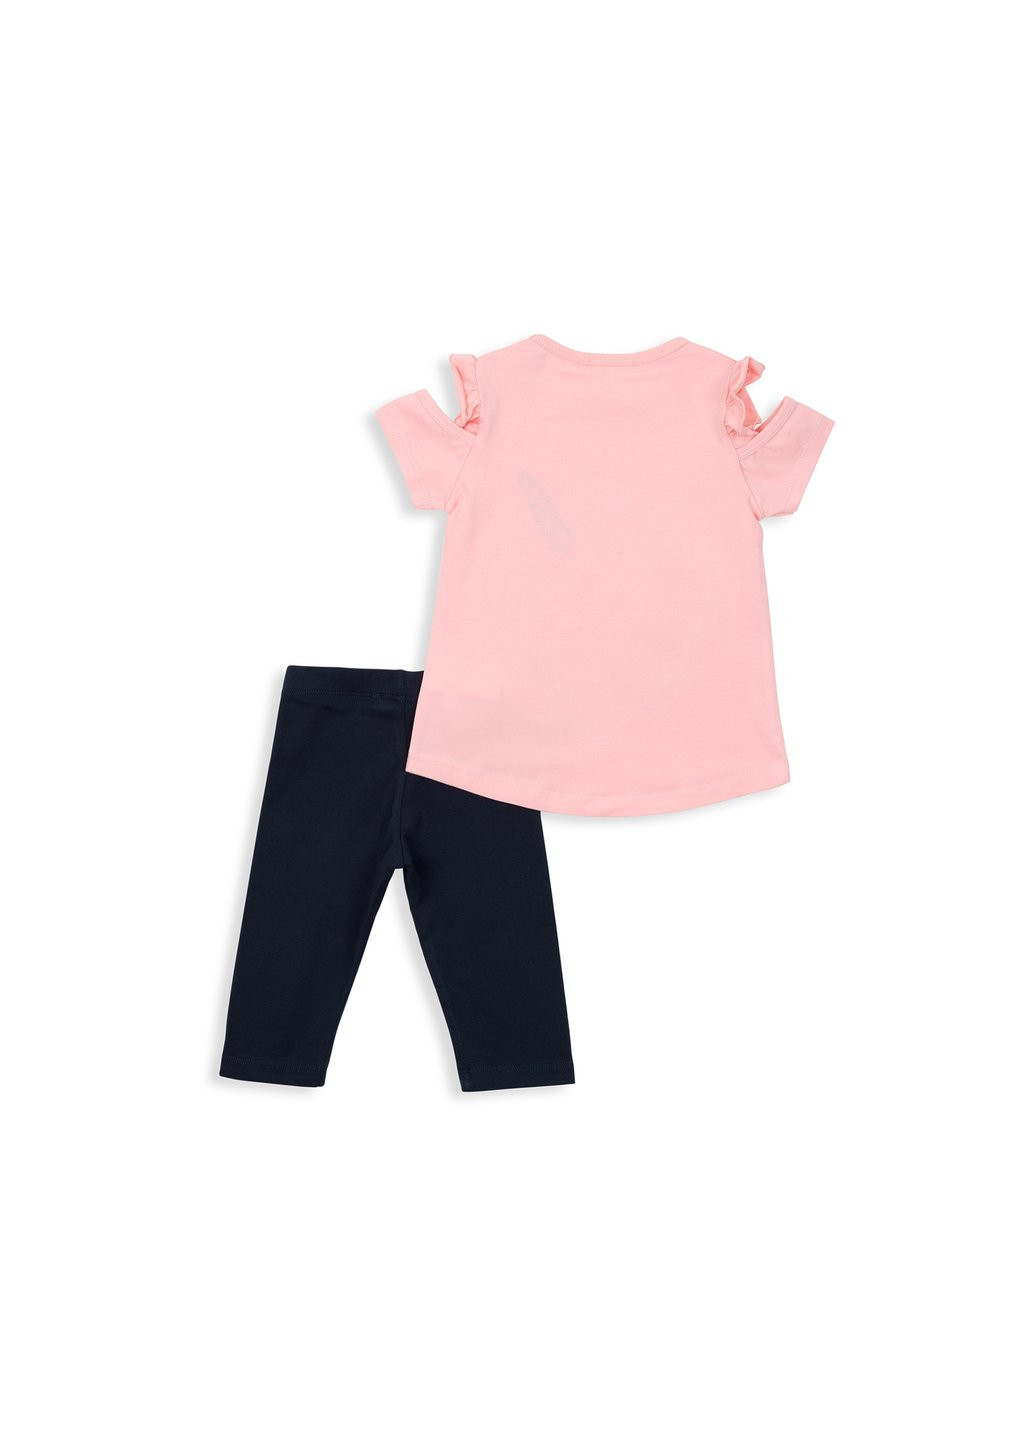 Комбинированный летний набор детской одежды с единорогом (12089-98g-peach) Breeze